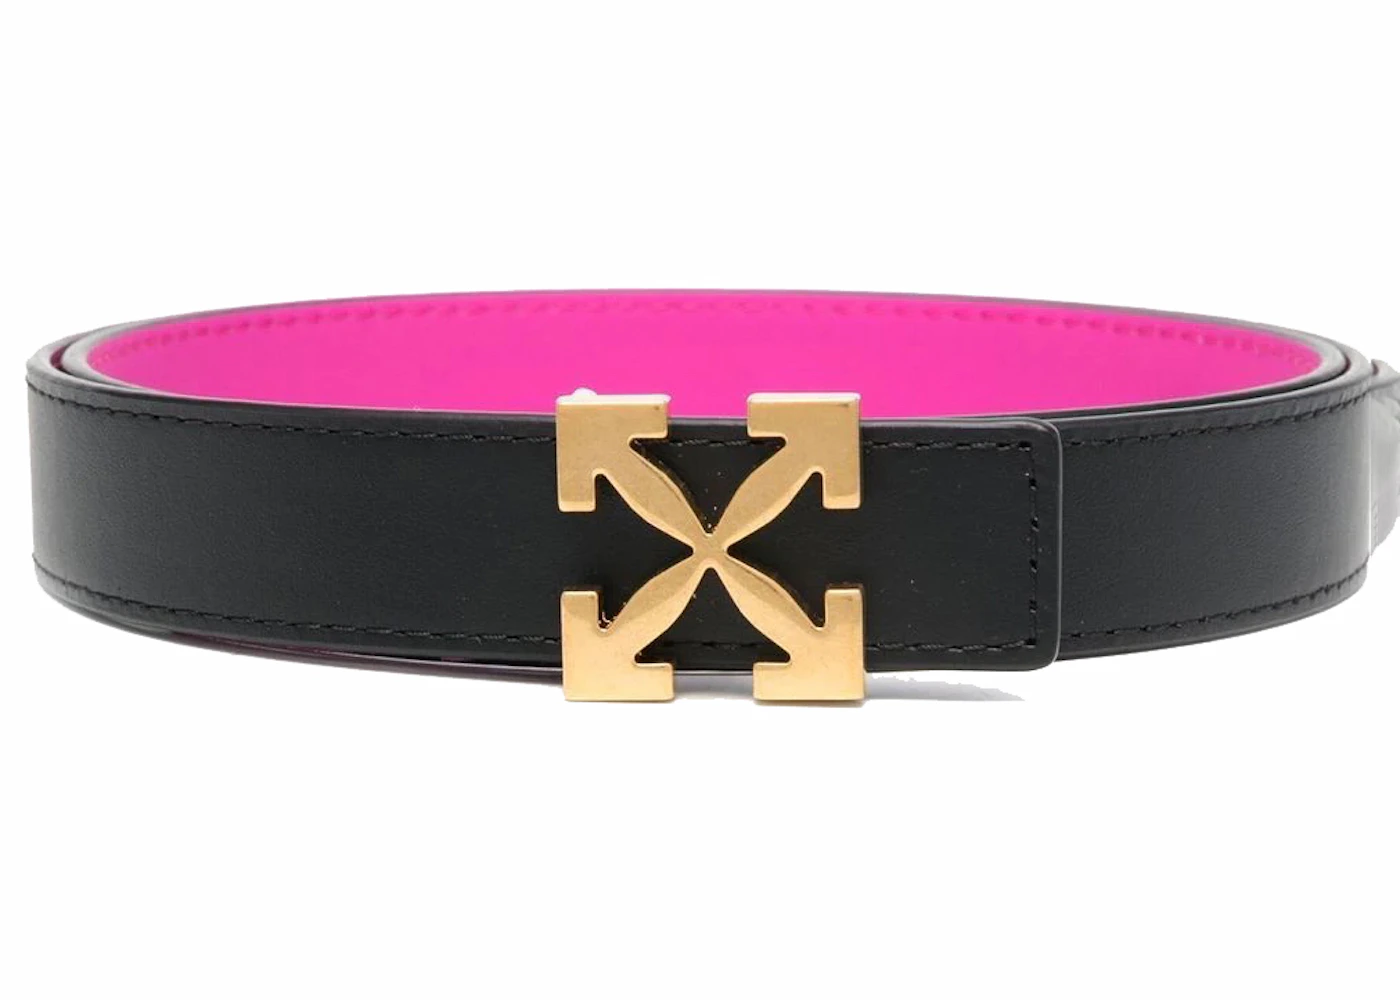 Golden Tiger Buckle & Reversible Leather Belt for Men - 6 Colors